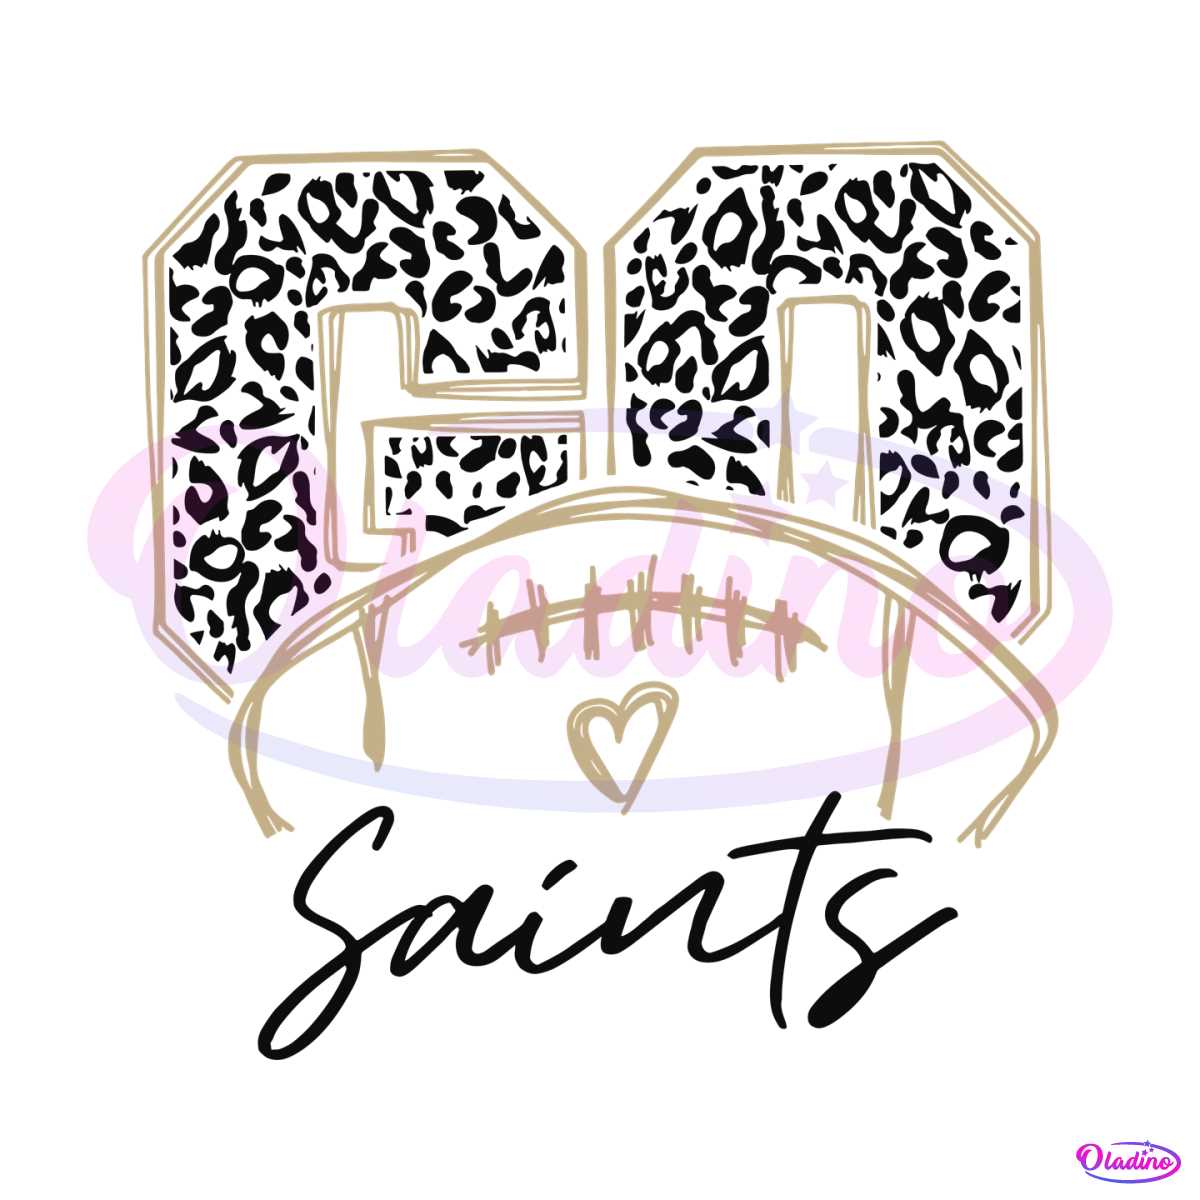 saints-football-fan-svg-new-orlean-saints-svg-file-for-cricut